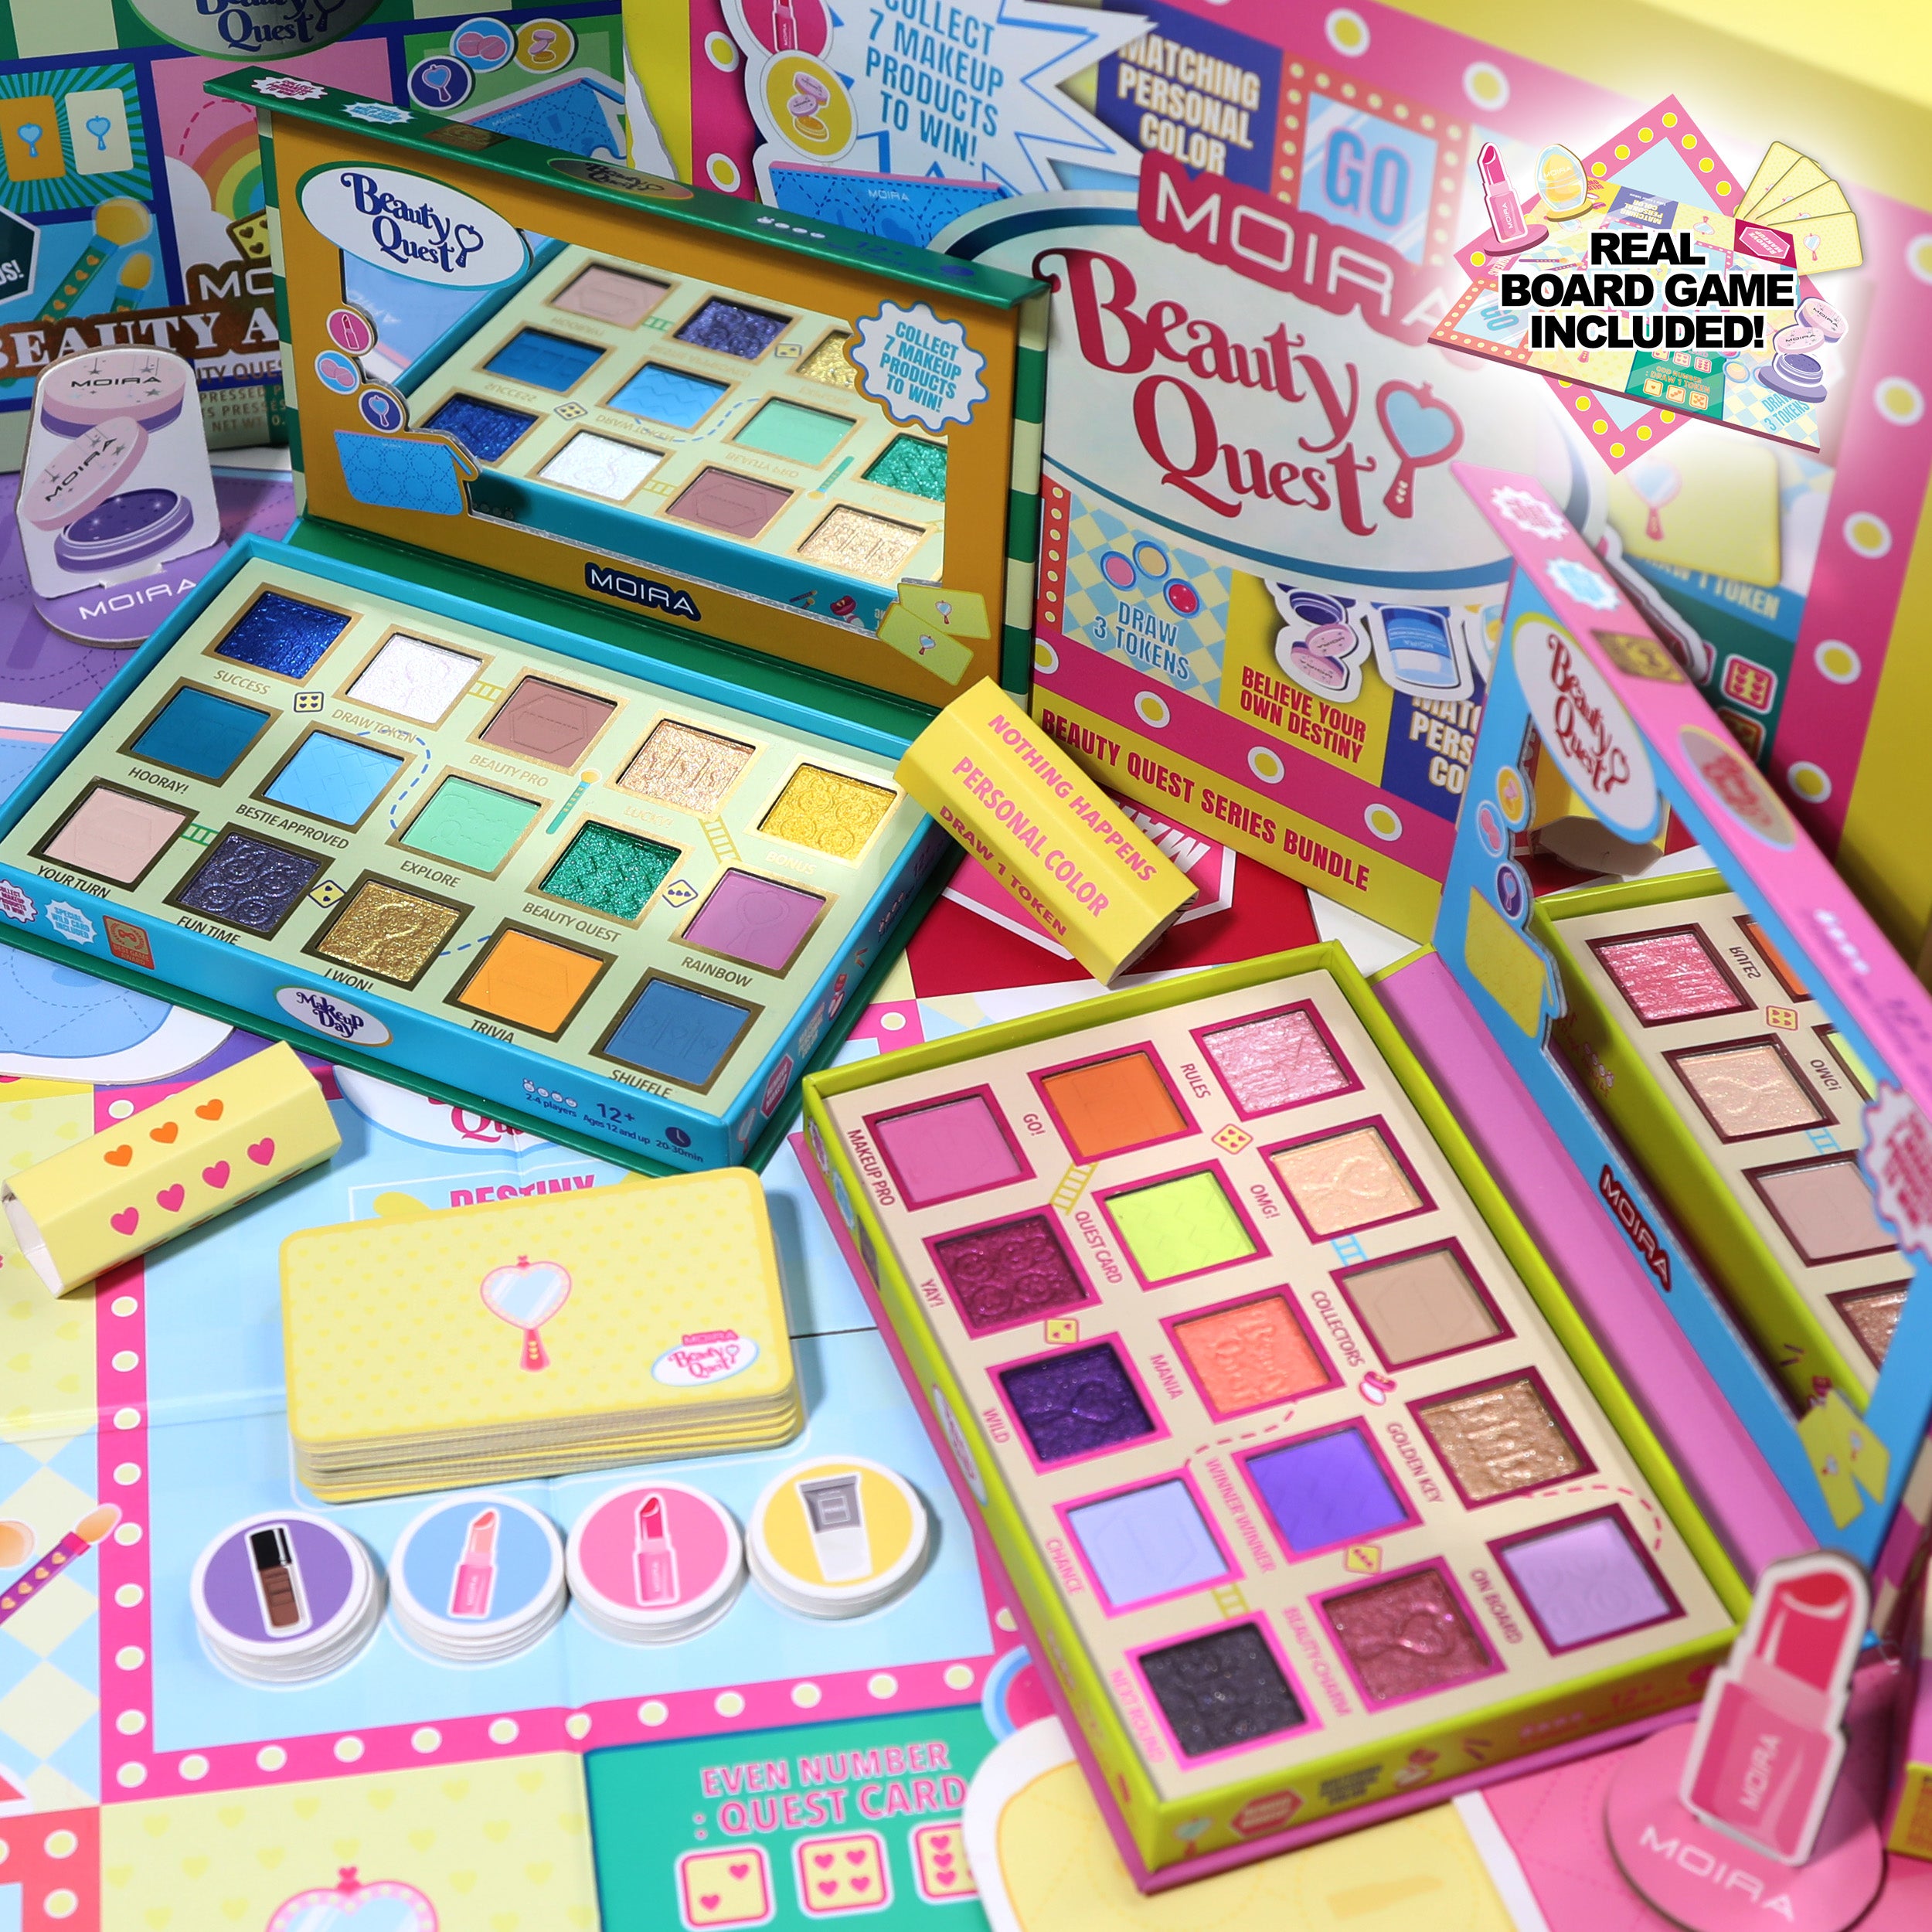 Beauty Quest Series Bundle (Exclusive Online PR Bundle)